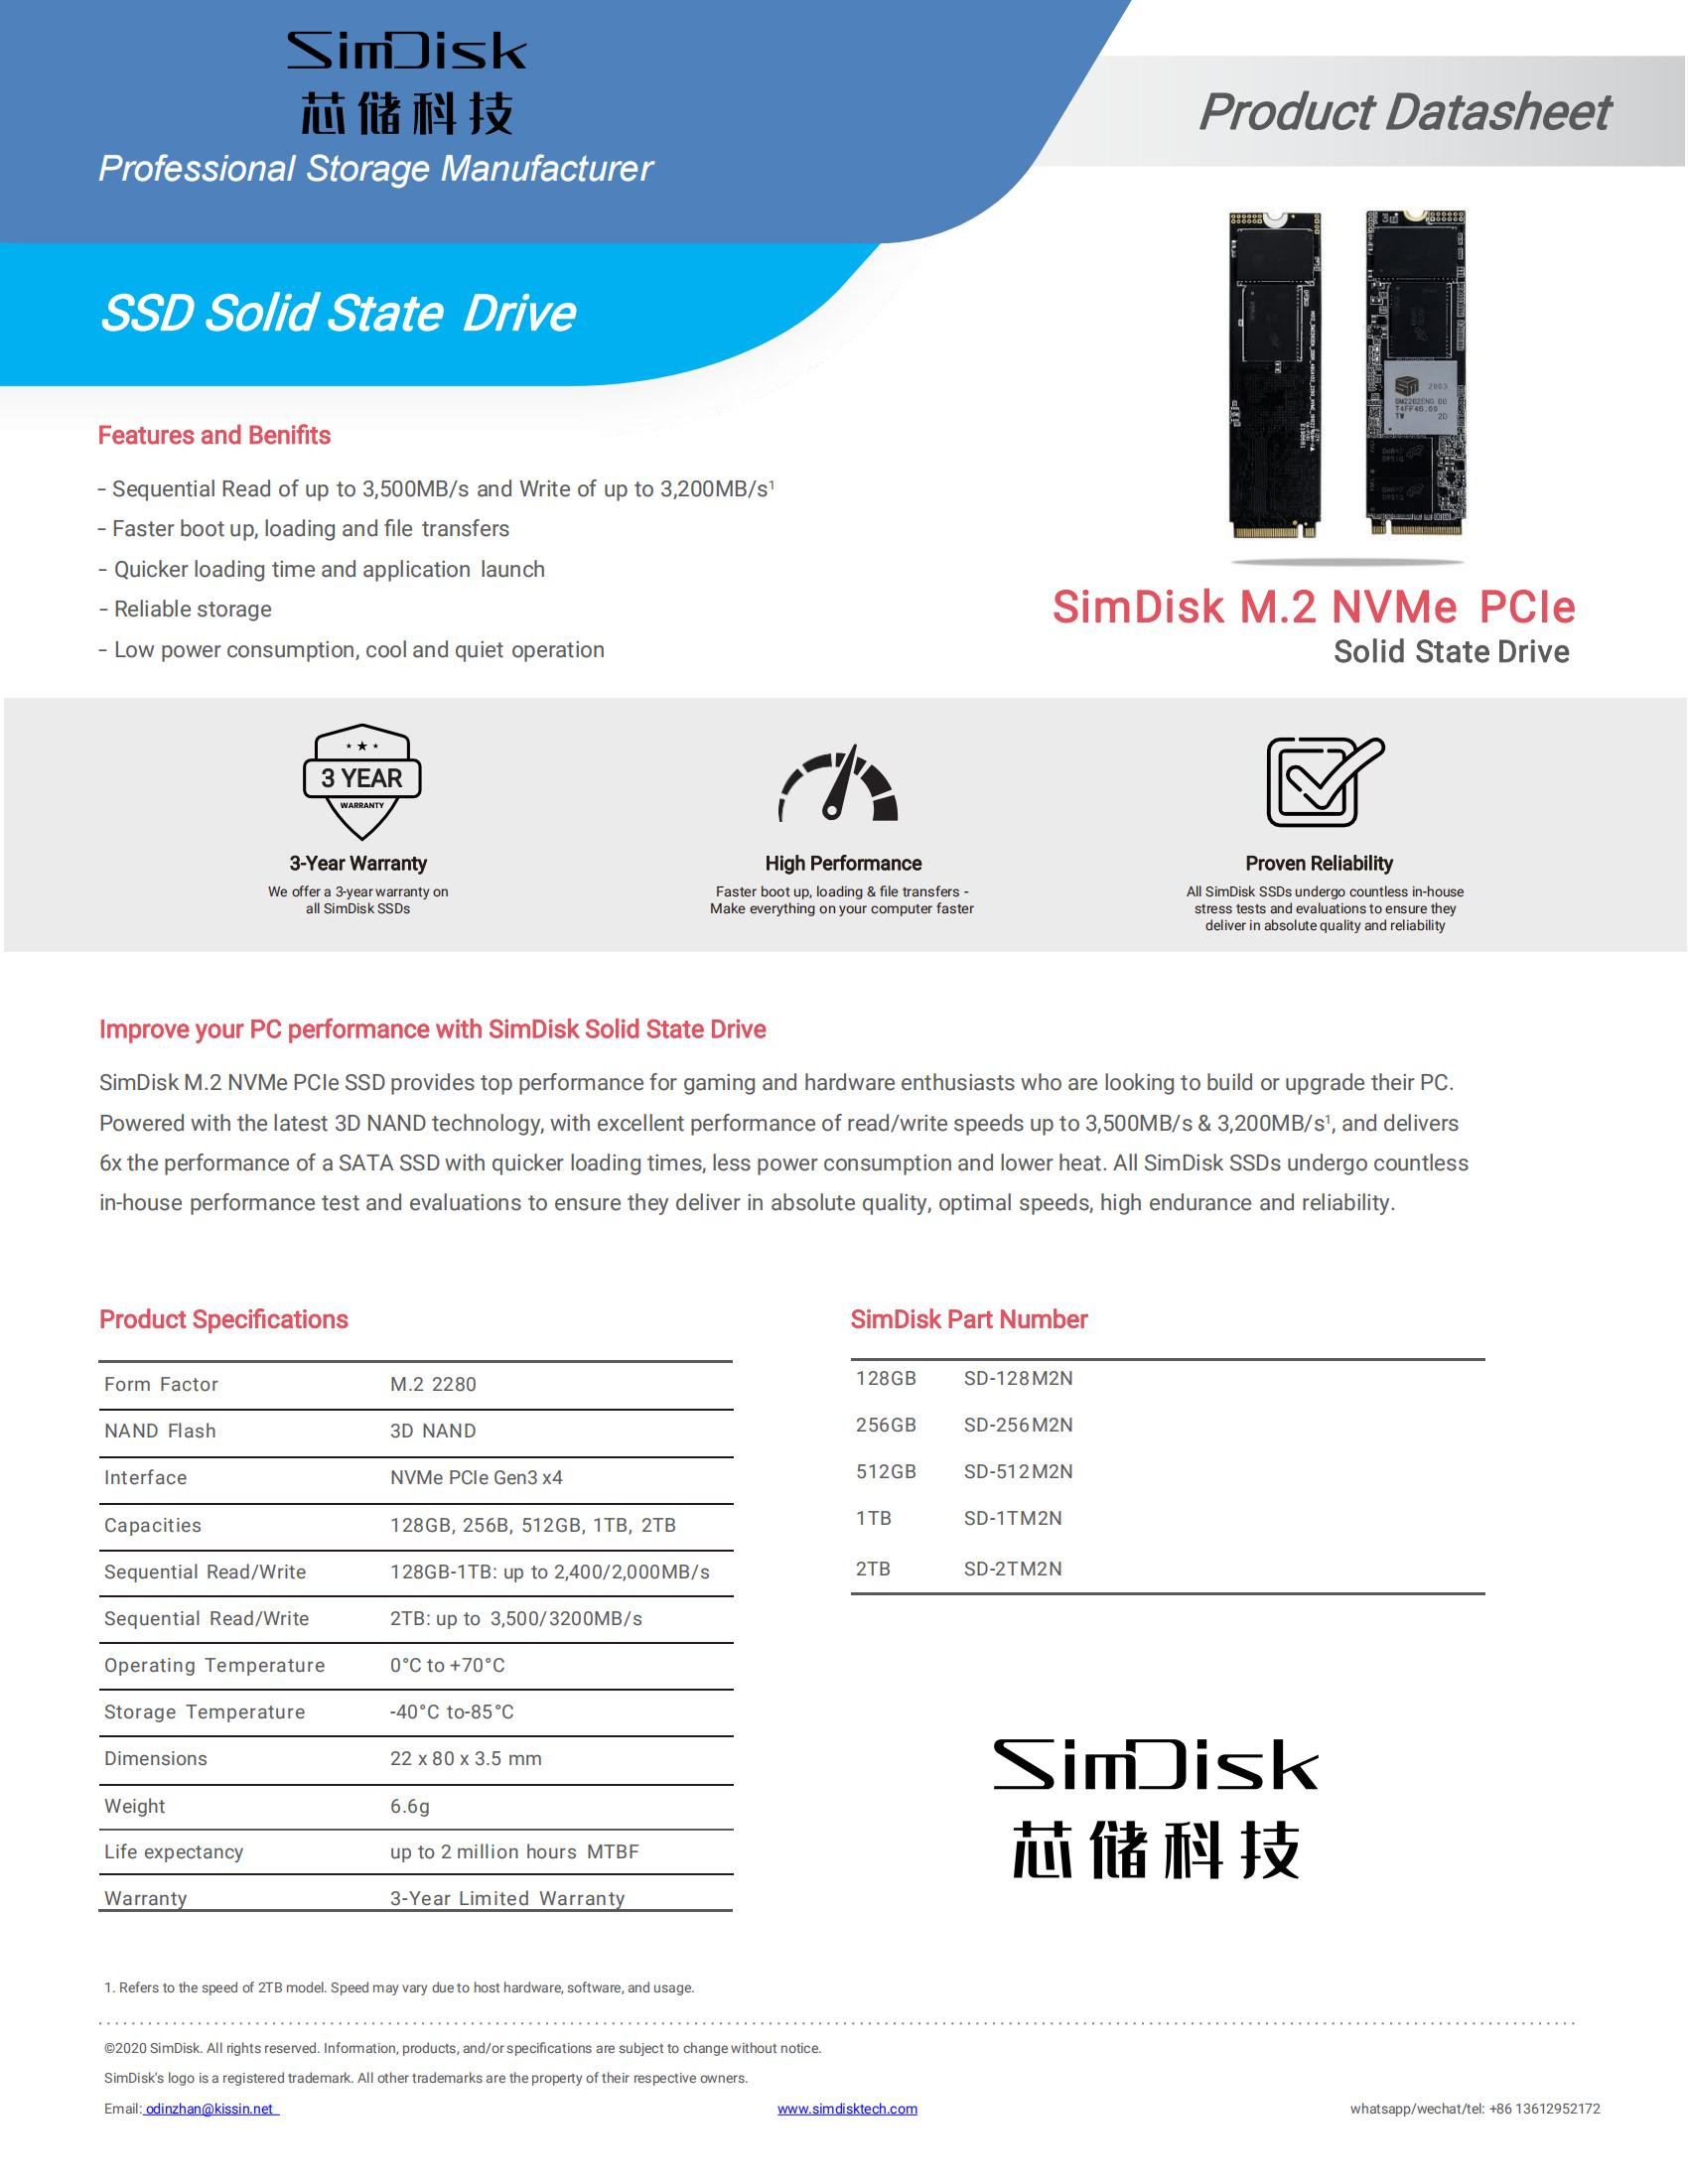 SimDisk M.2 NVME SSD ڈیٹا شیٹ_00